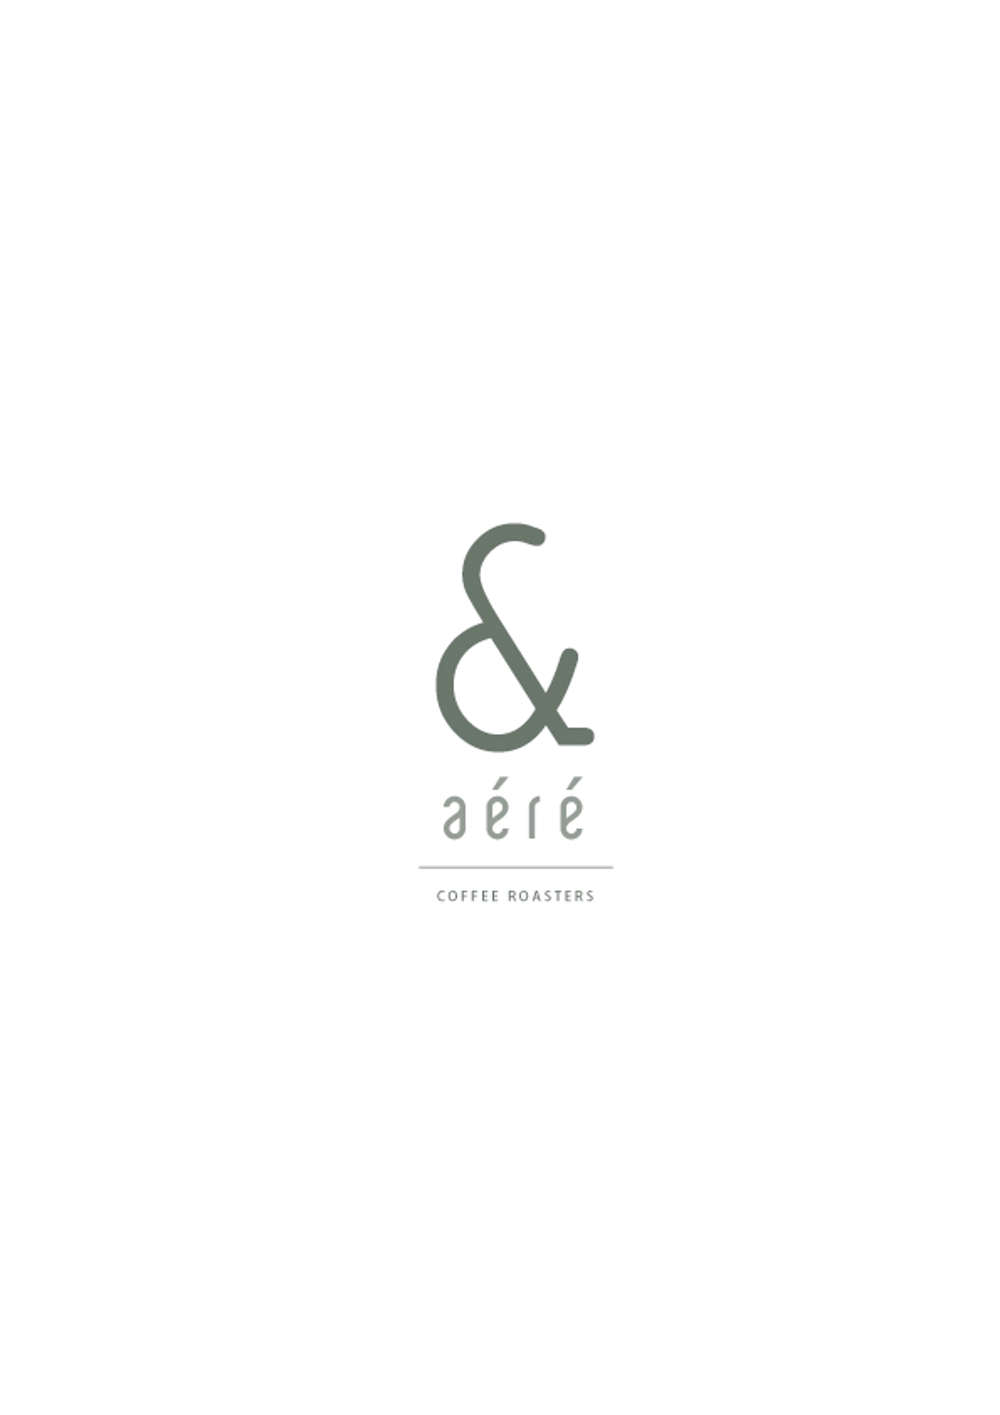 コーヒーロースター＆カフェ「アンドアエレ」のロゴ